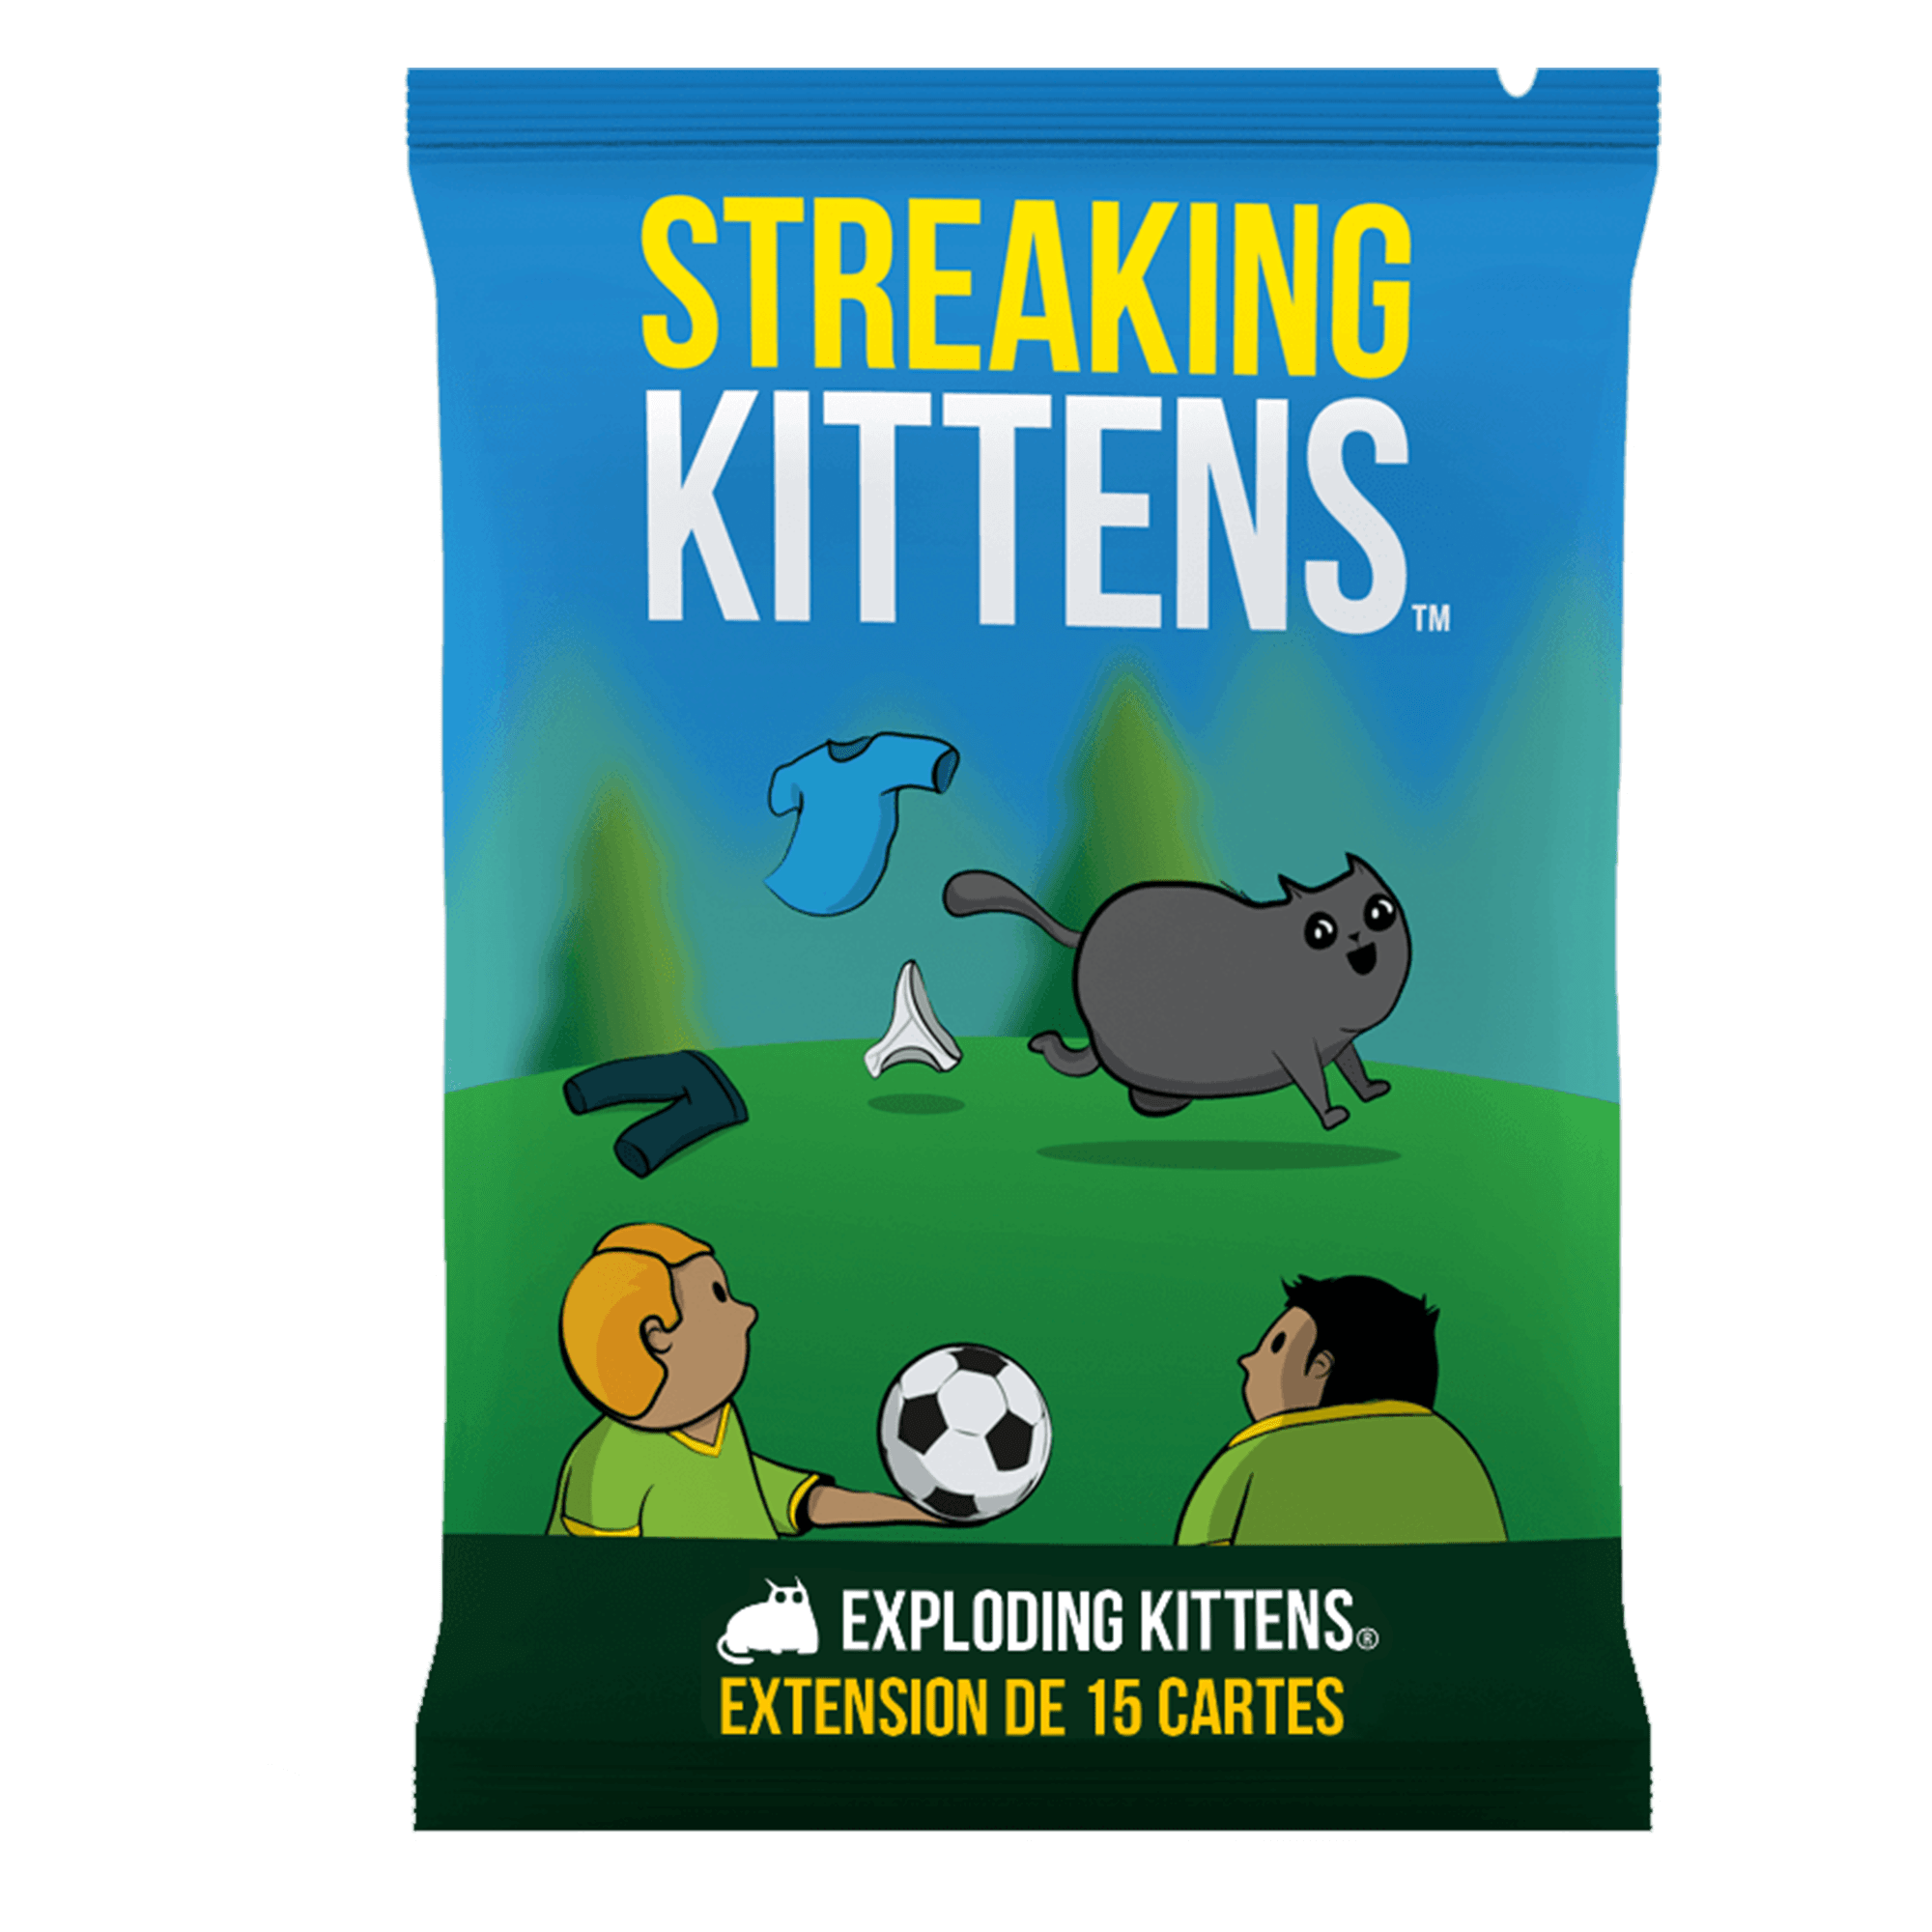 Asmodee - Exploding Kittens - Jeu de cartes, jeu de société, 2-5 joueurs, 7  ans et plus, édition en italien